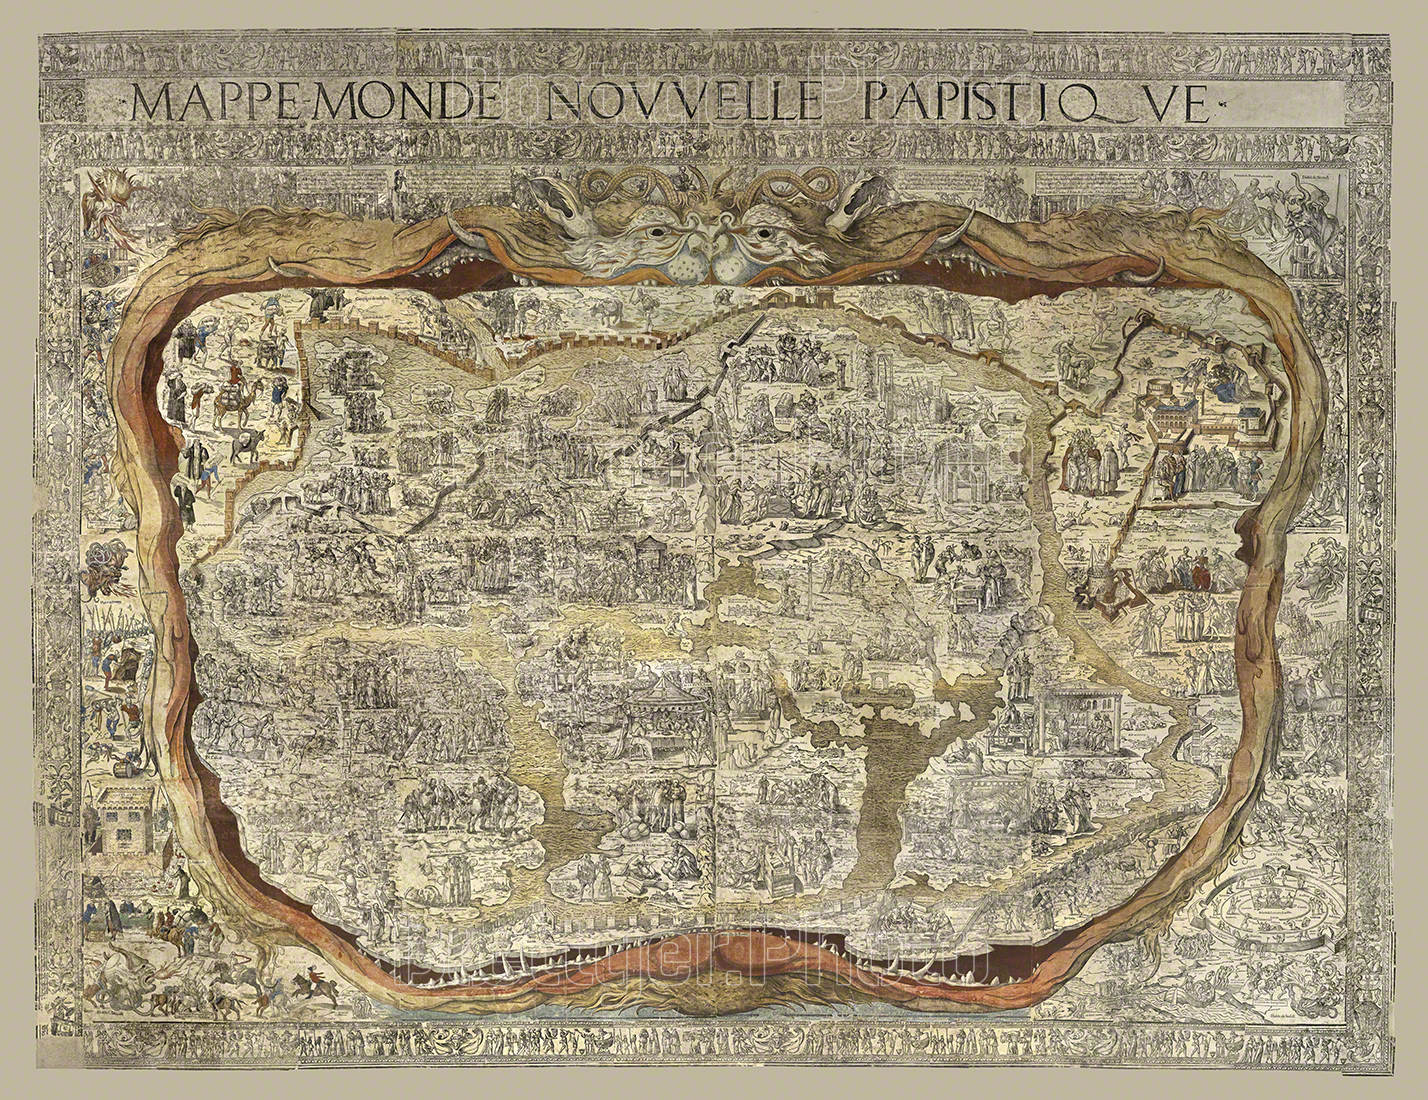 Mappe Monde Novelle Papistique